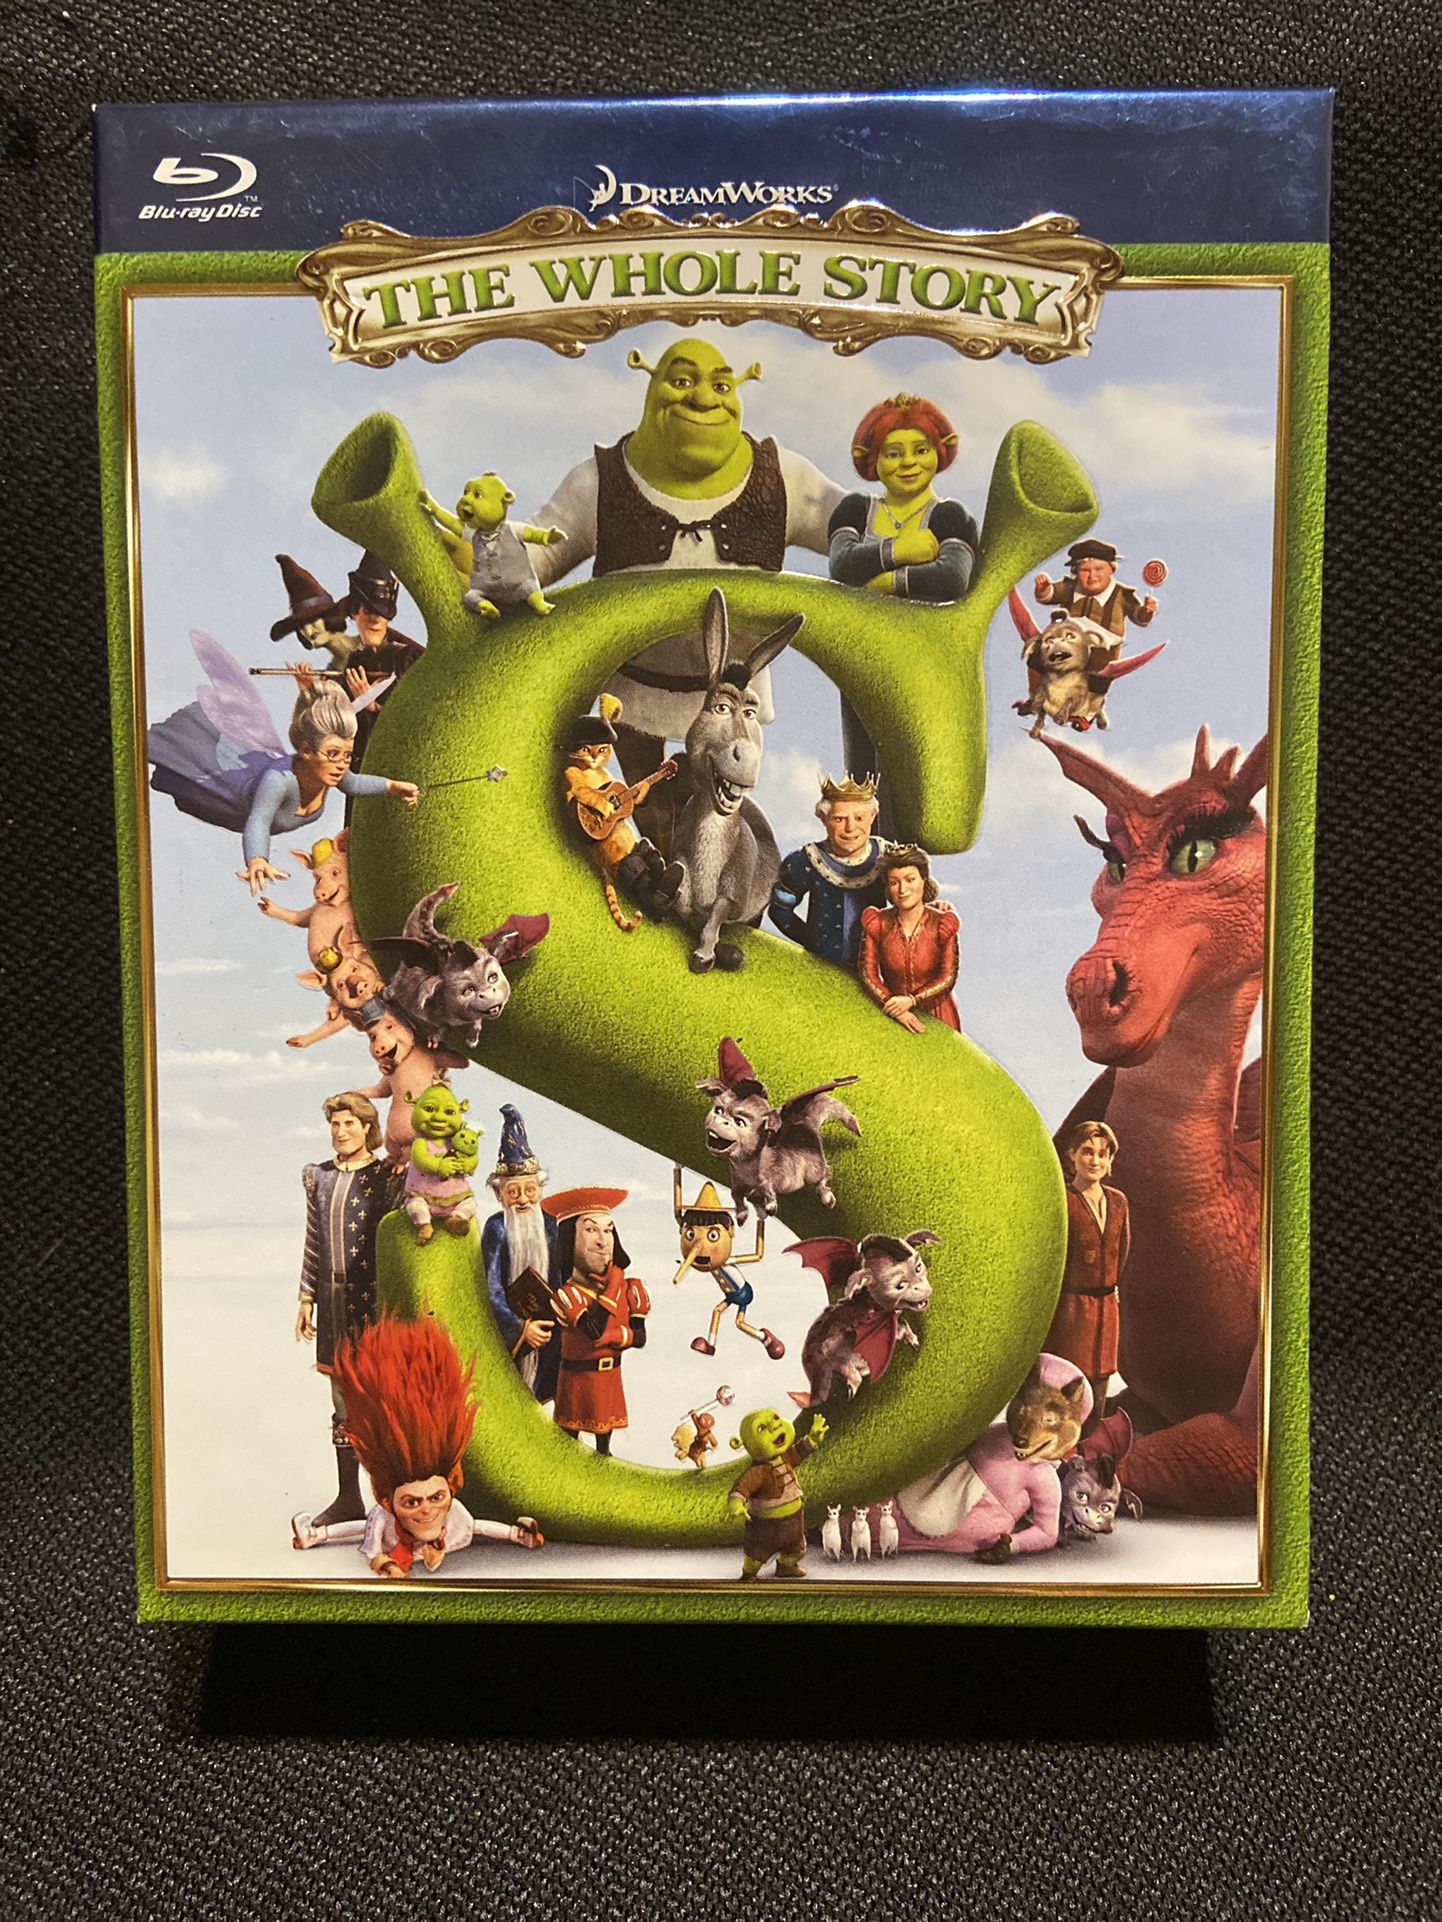 Shrek 4 Individual Blu-rays In One Pack